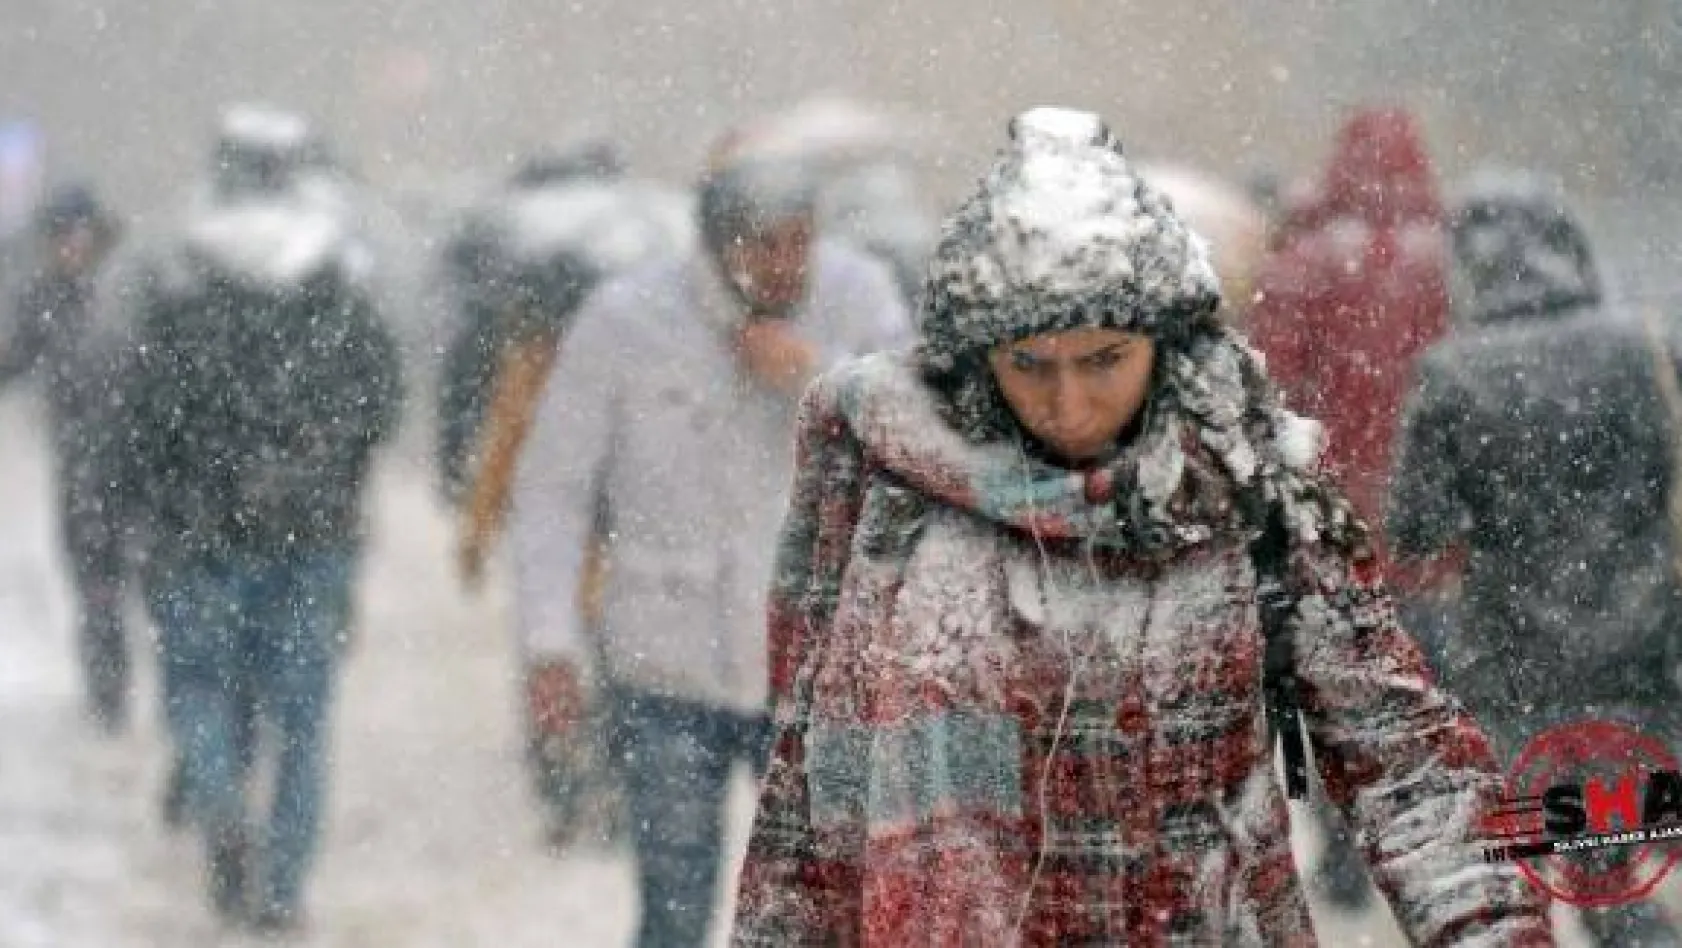 İstanbul'a kar ne zaman yağacak?